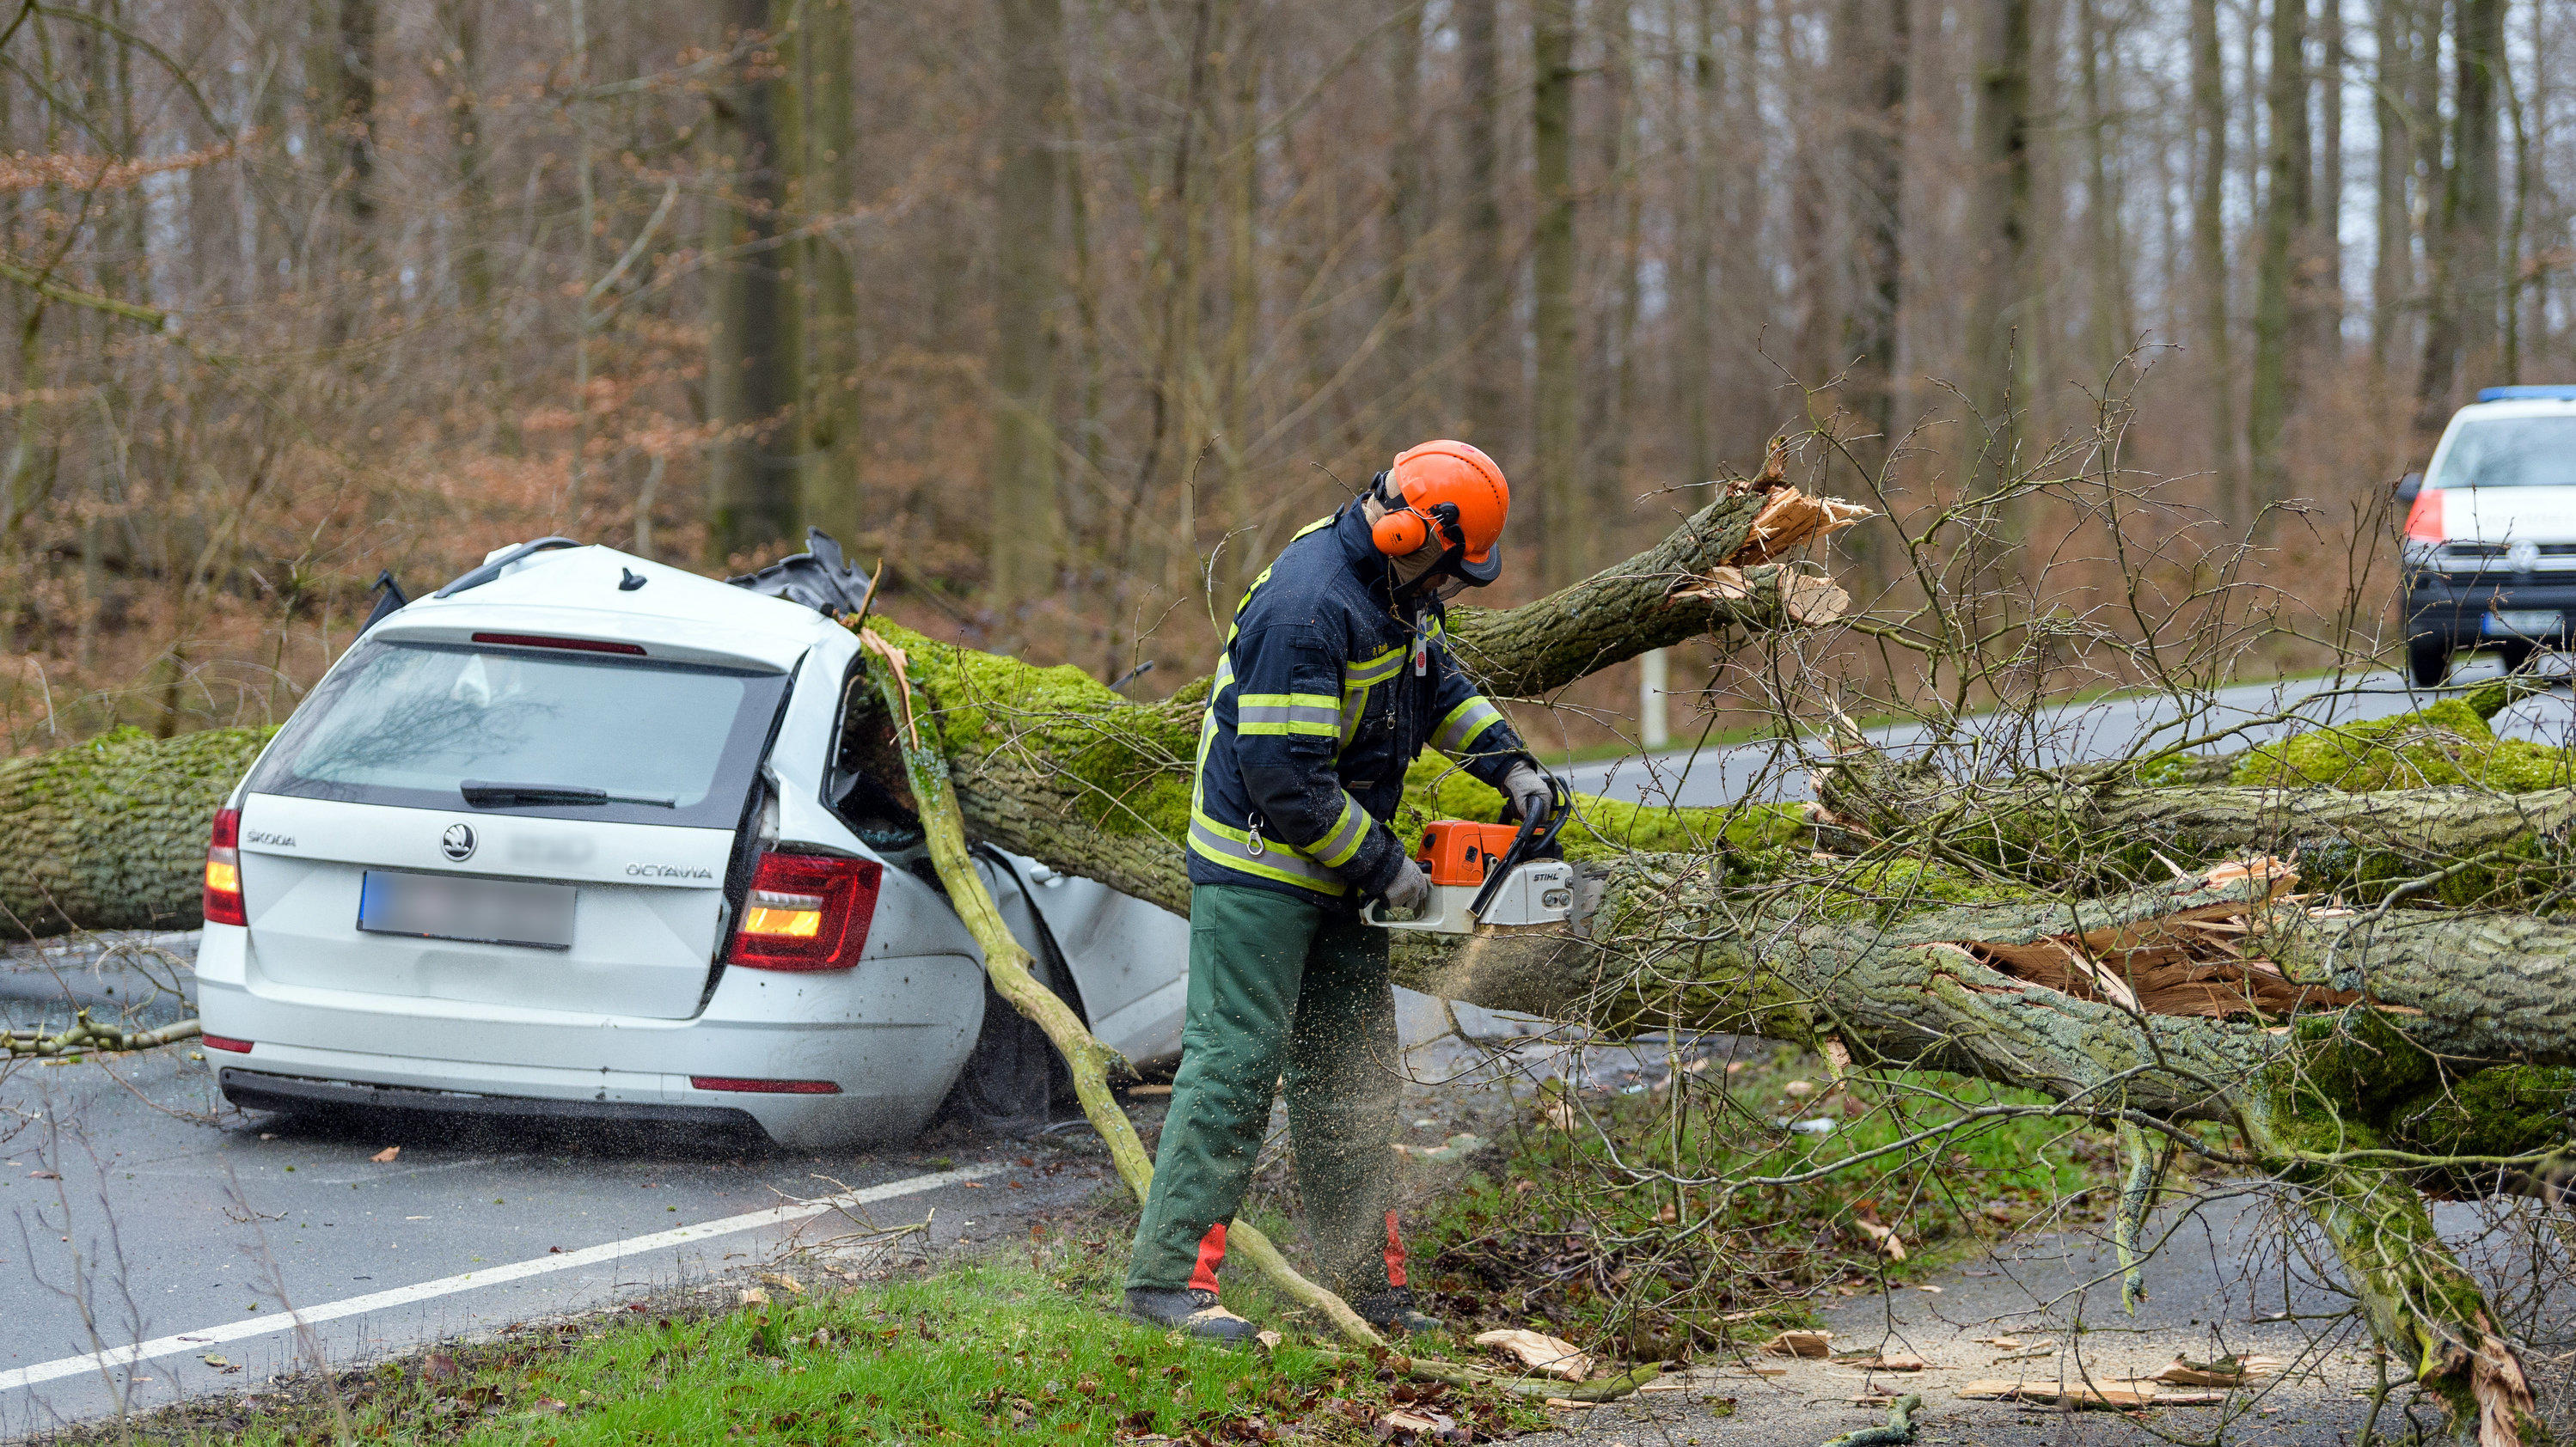 dpatopbilder - 17.02.2022, Niedersachsen, Bad Bevensen: Ein durch den Sturm umgestürzter Baum liegt auf einem Pkw. Der 37-jährige Fahrer wurde dabei tödlich verletzt. Foto: Philipp Schulze/dpa +++ dpa-Bildfunk +++